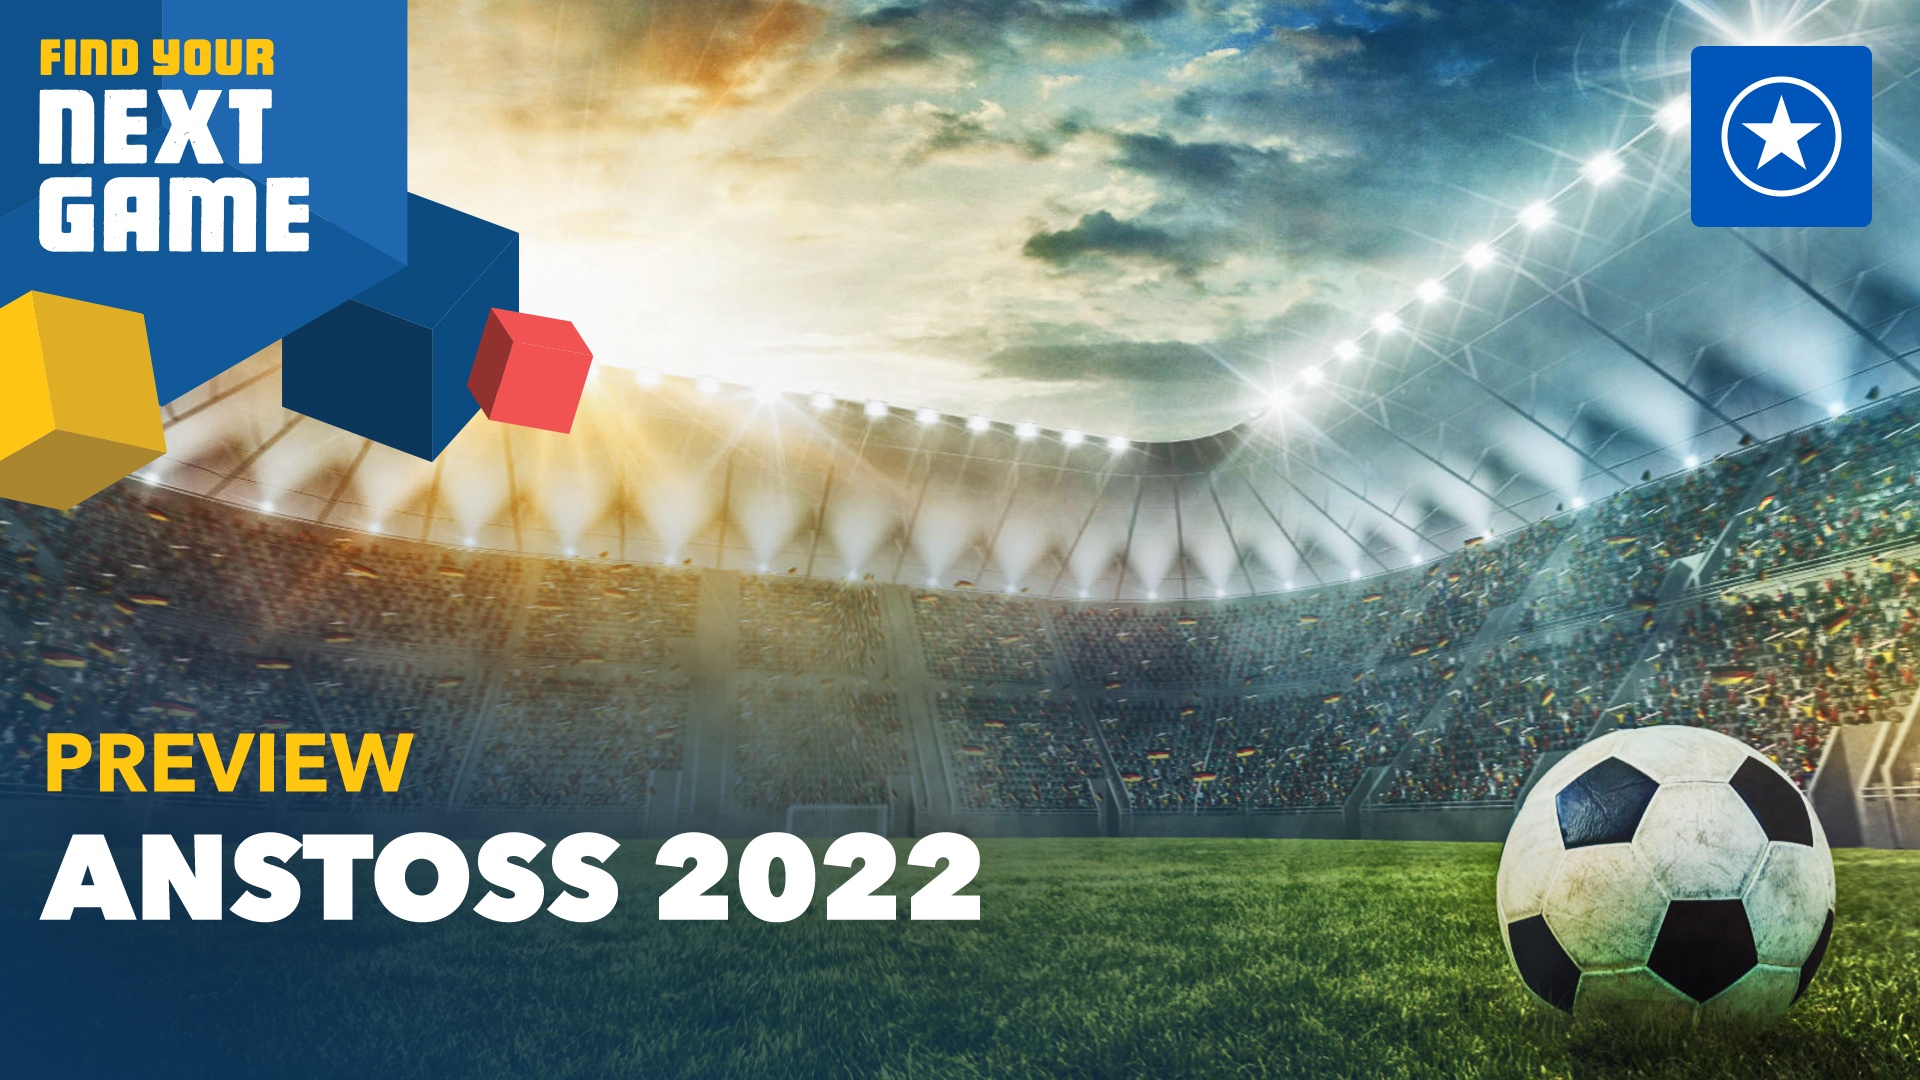 Preview: Anstoss 2022 nimmt sich den besten Serienteil zum Vorbild